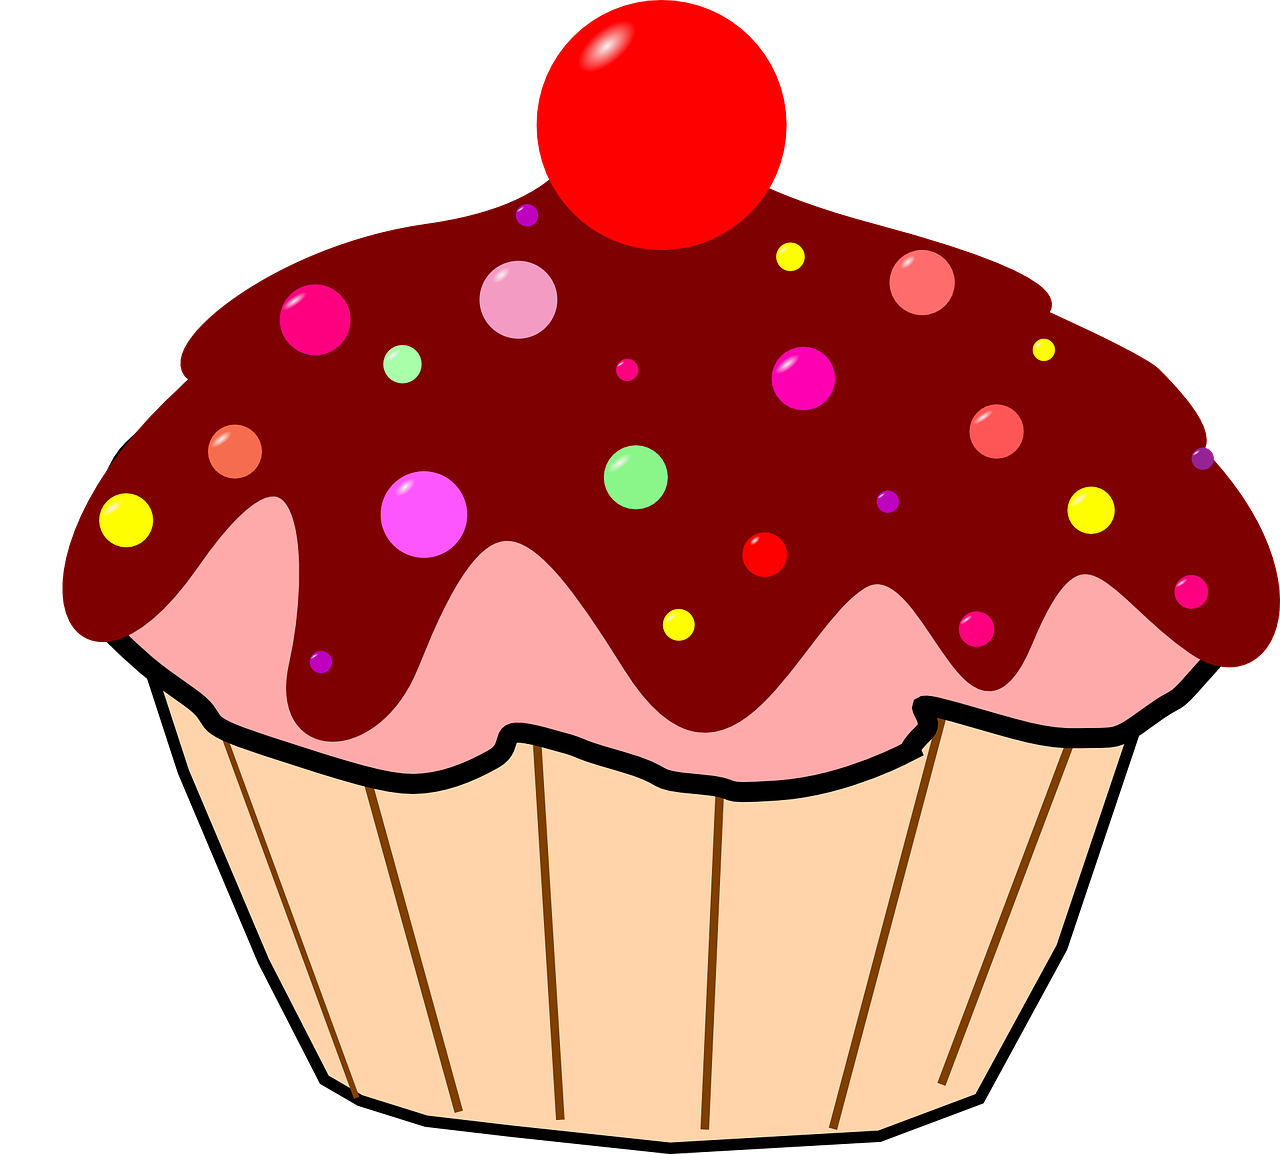 Cartoon Cupcake Cherry On Top Transparent Image